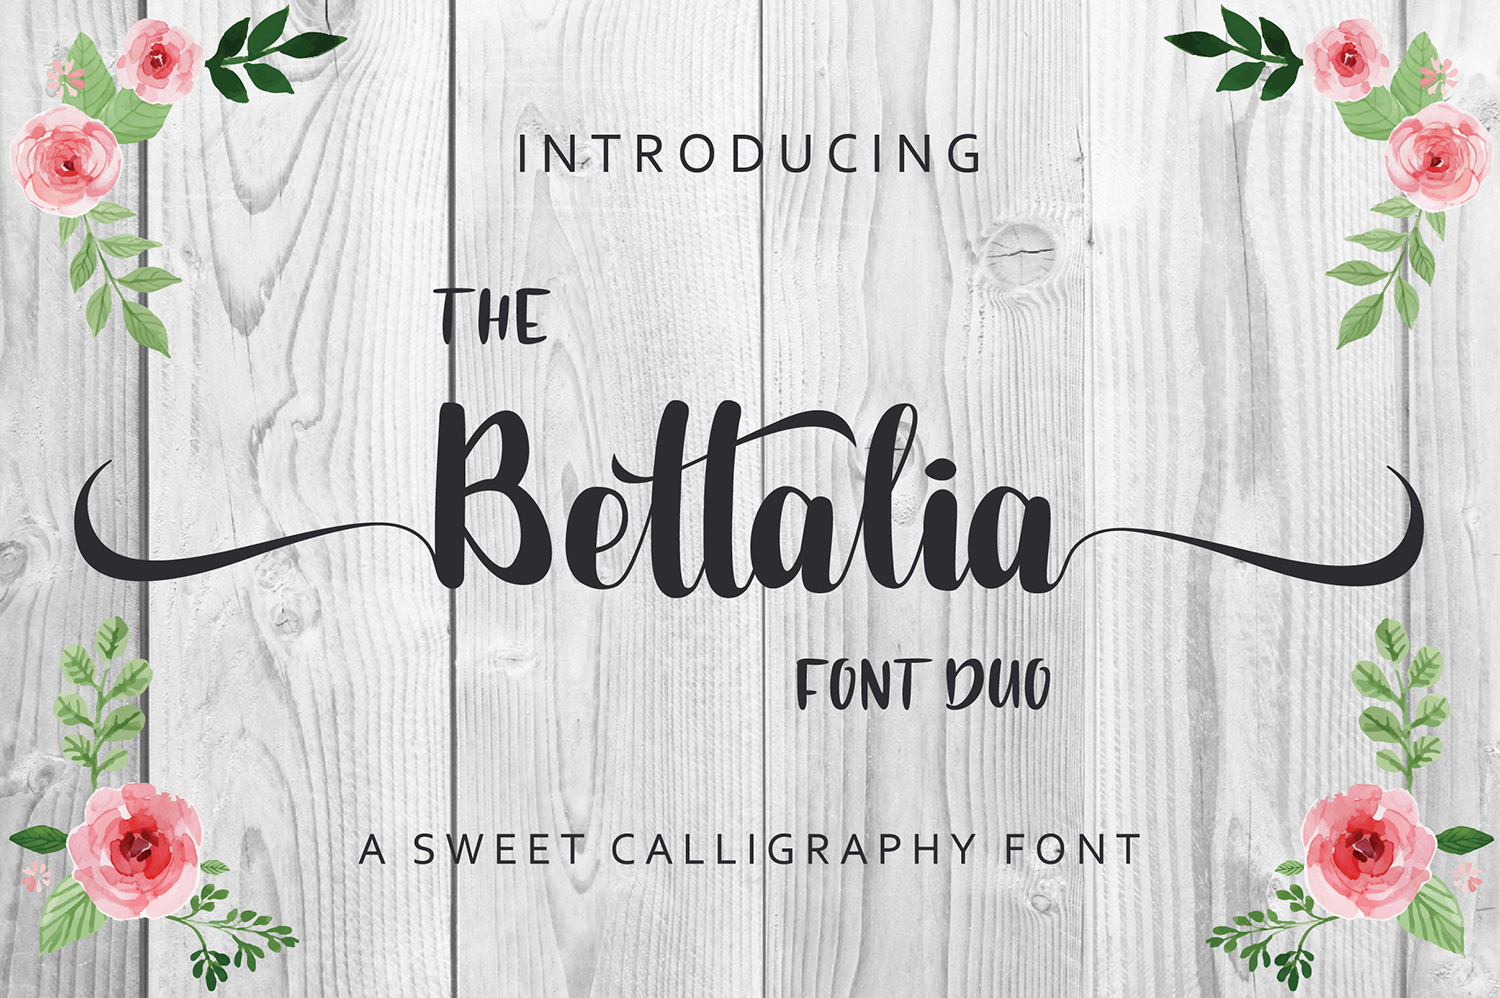 Bettalia Free Font